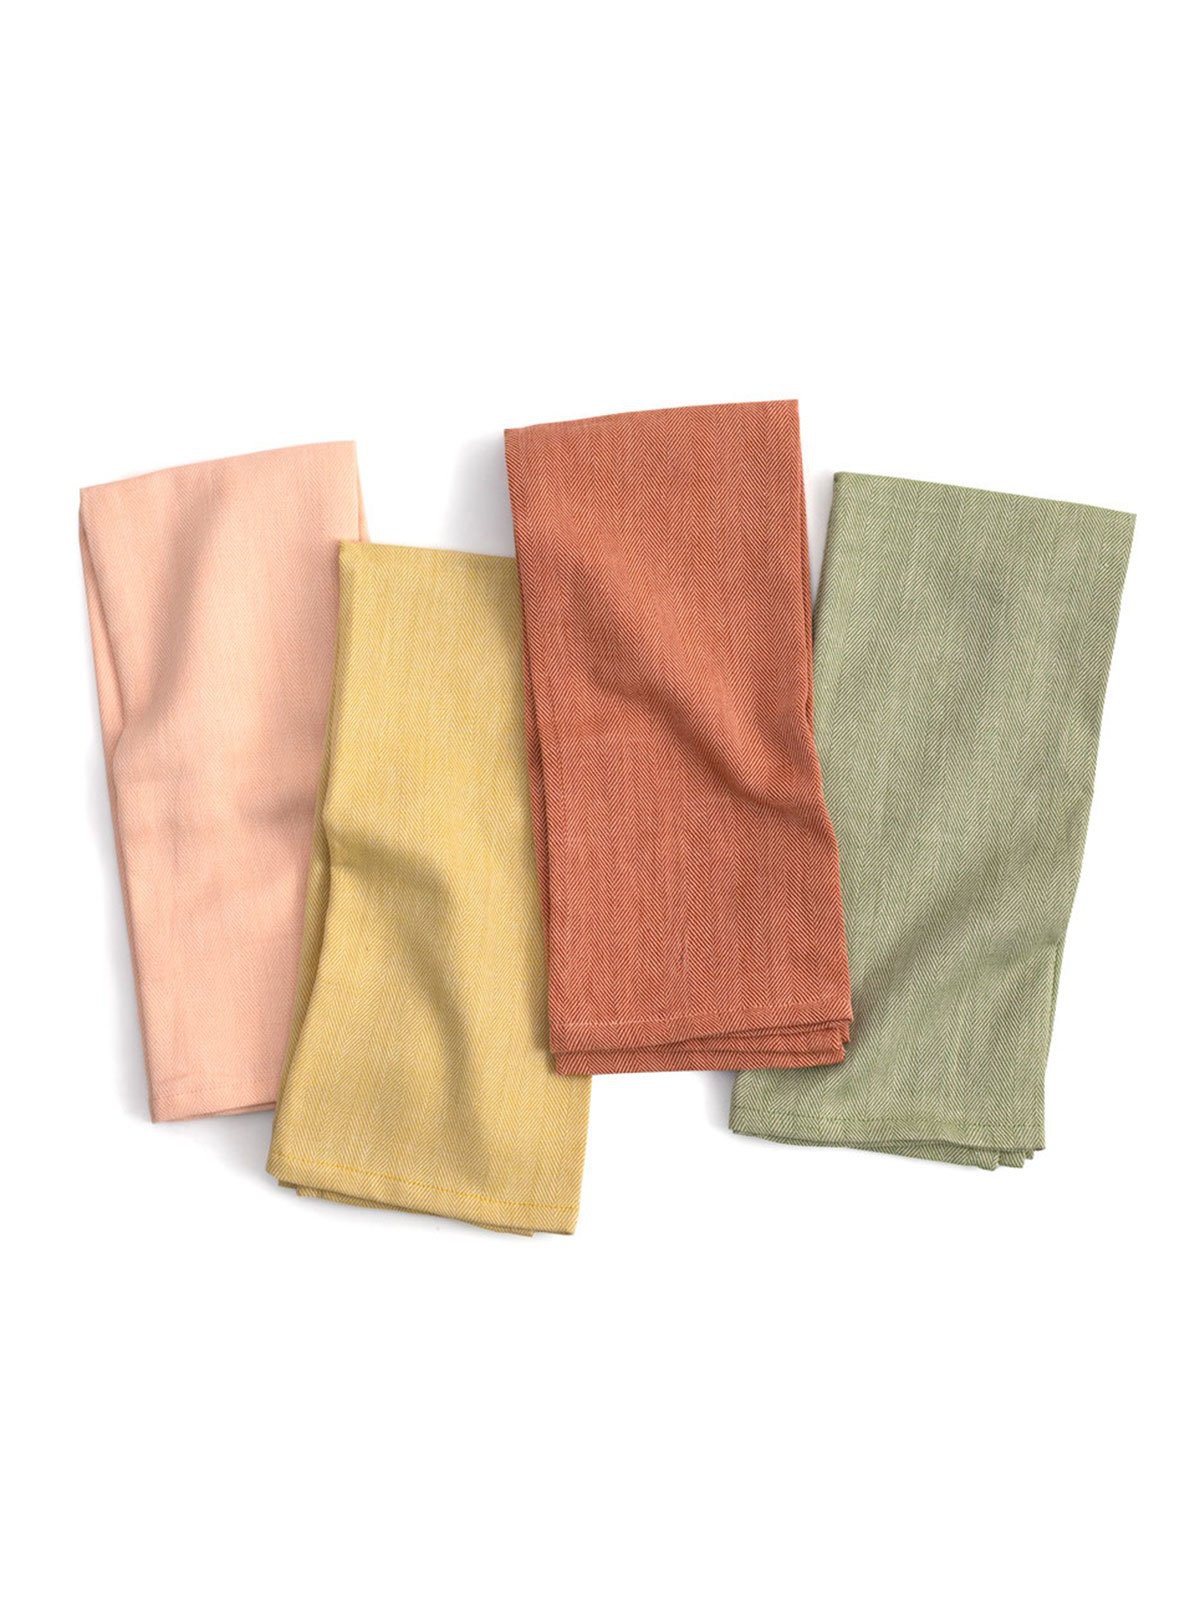 Kitchen Dish Towels, Herringbone Weave Kitchen Towels, 100% Cotton